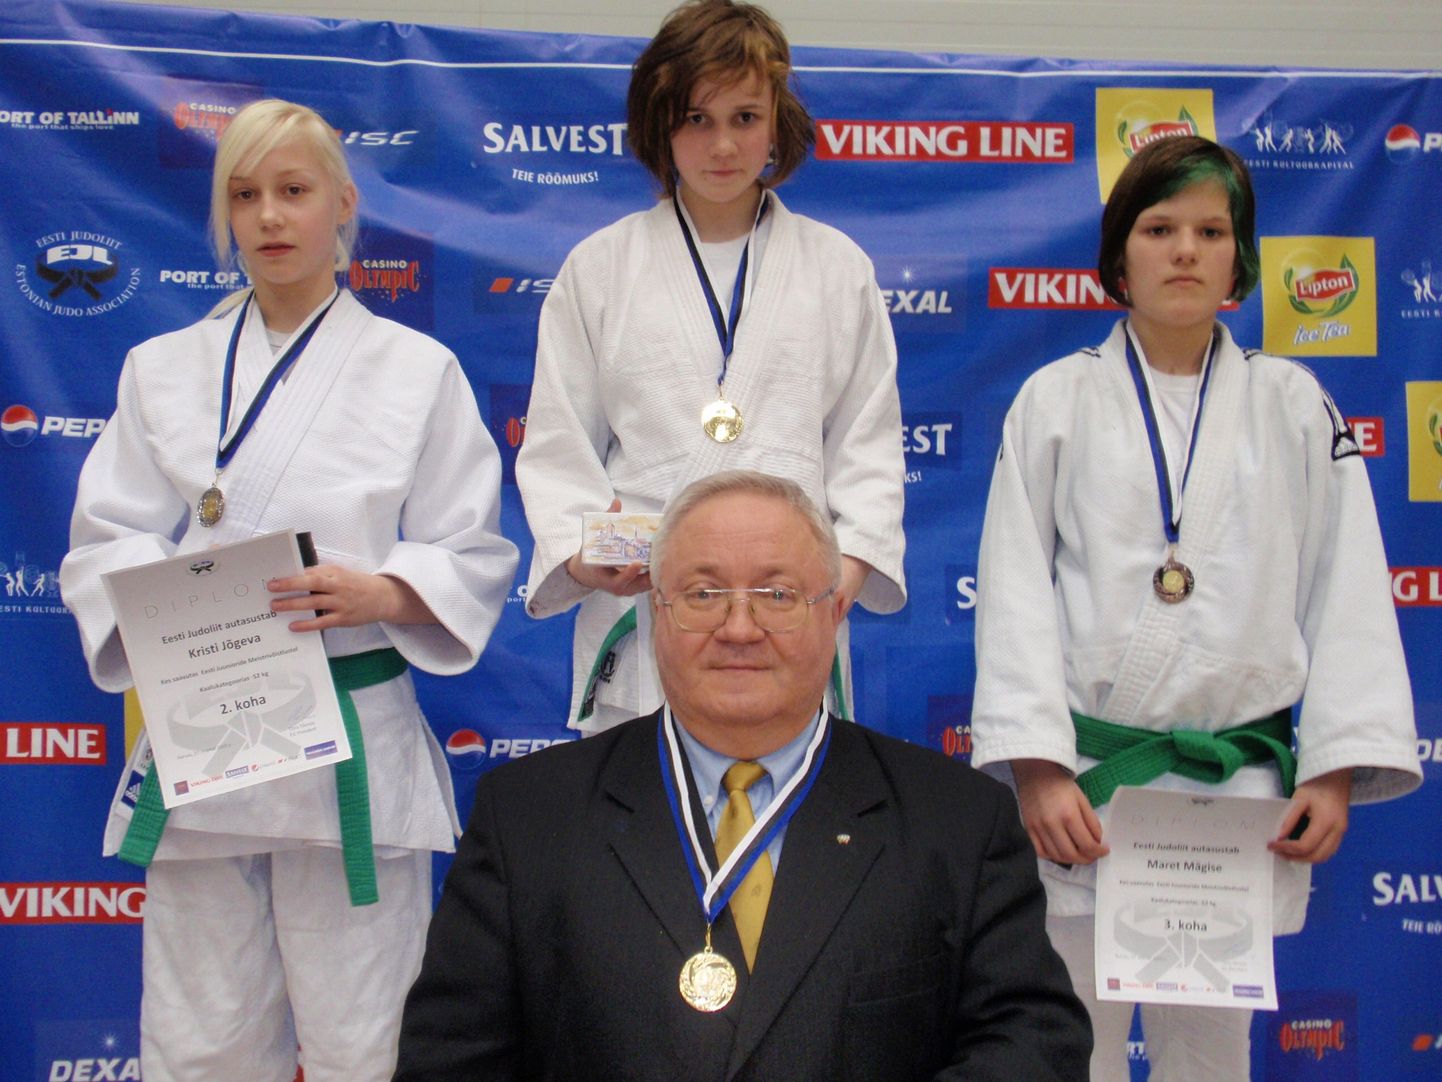 Naisjuunioride medalivõitjad Kristel Mäekivi (keskel, Sakura), Kristi Jõgeva (vasakul, Võru Rei), Maret Mägiste (Võru Rei) ja Sakura treener Riho Rannikmaa.